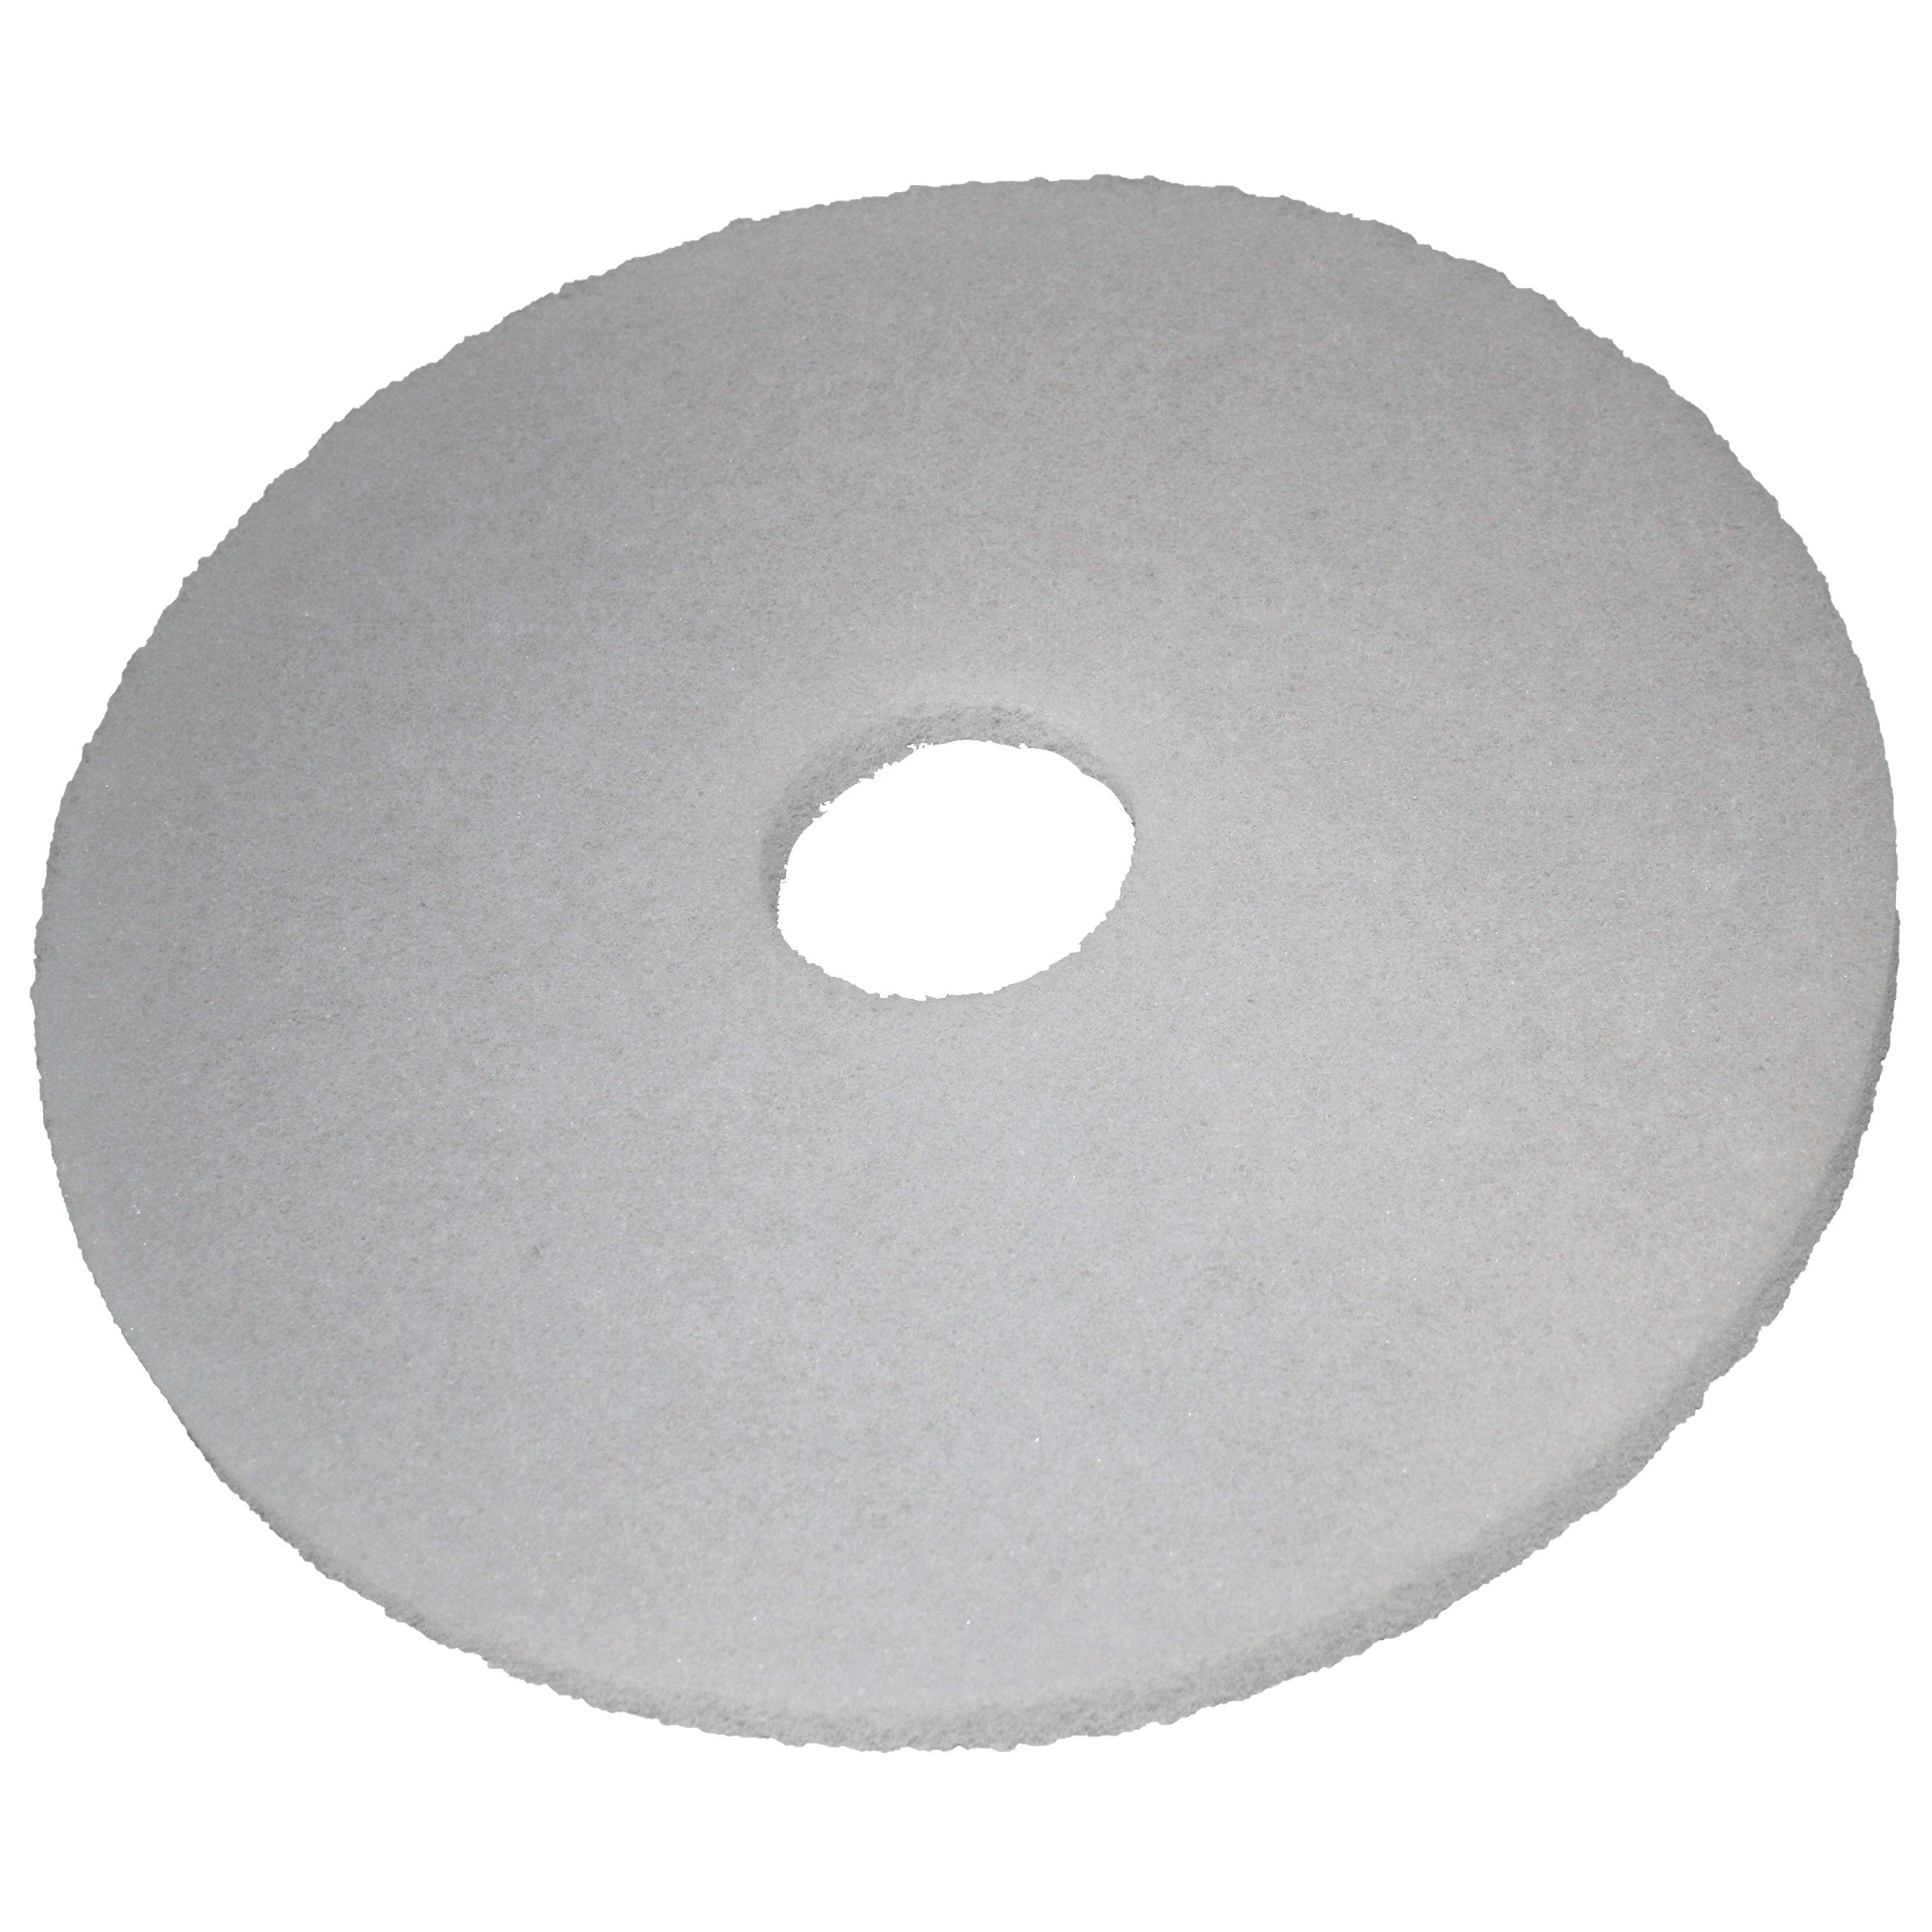 Pad blanc, Ø 330 mm, polyester